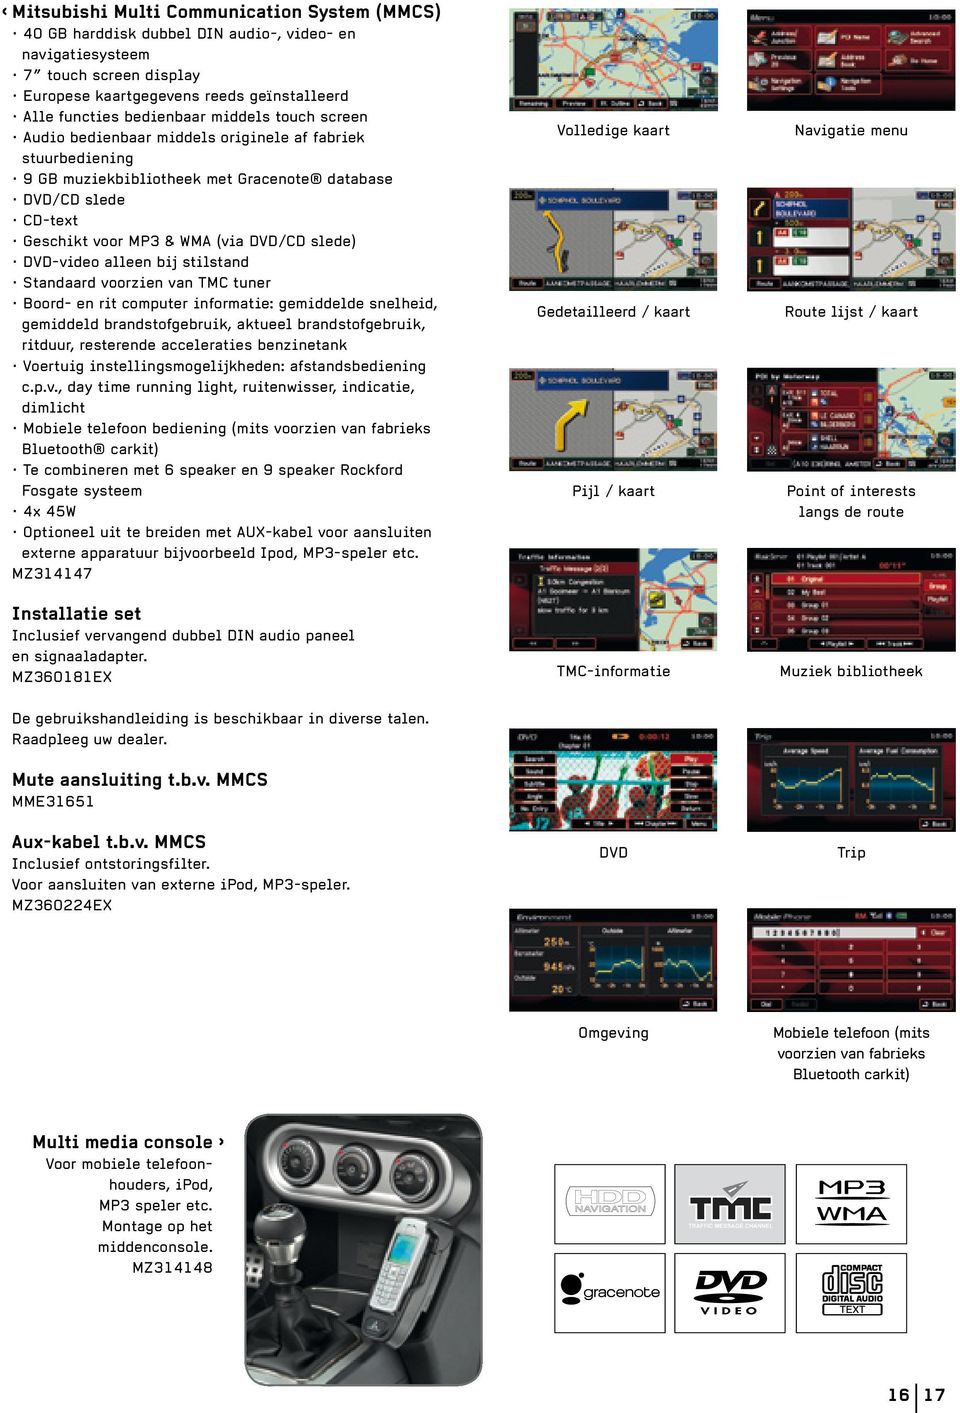 DVD-video alleen bij stilstand Standaard voorzien van TMC tuner Boord- en rit computer informatie: gemiddelde snelheid, gemiddeld brandstofgebruik, aktueel brandstofgebruik, ritduur, resterende